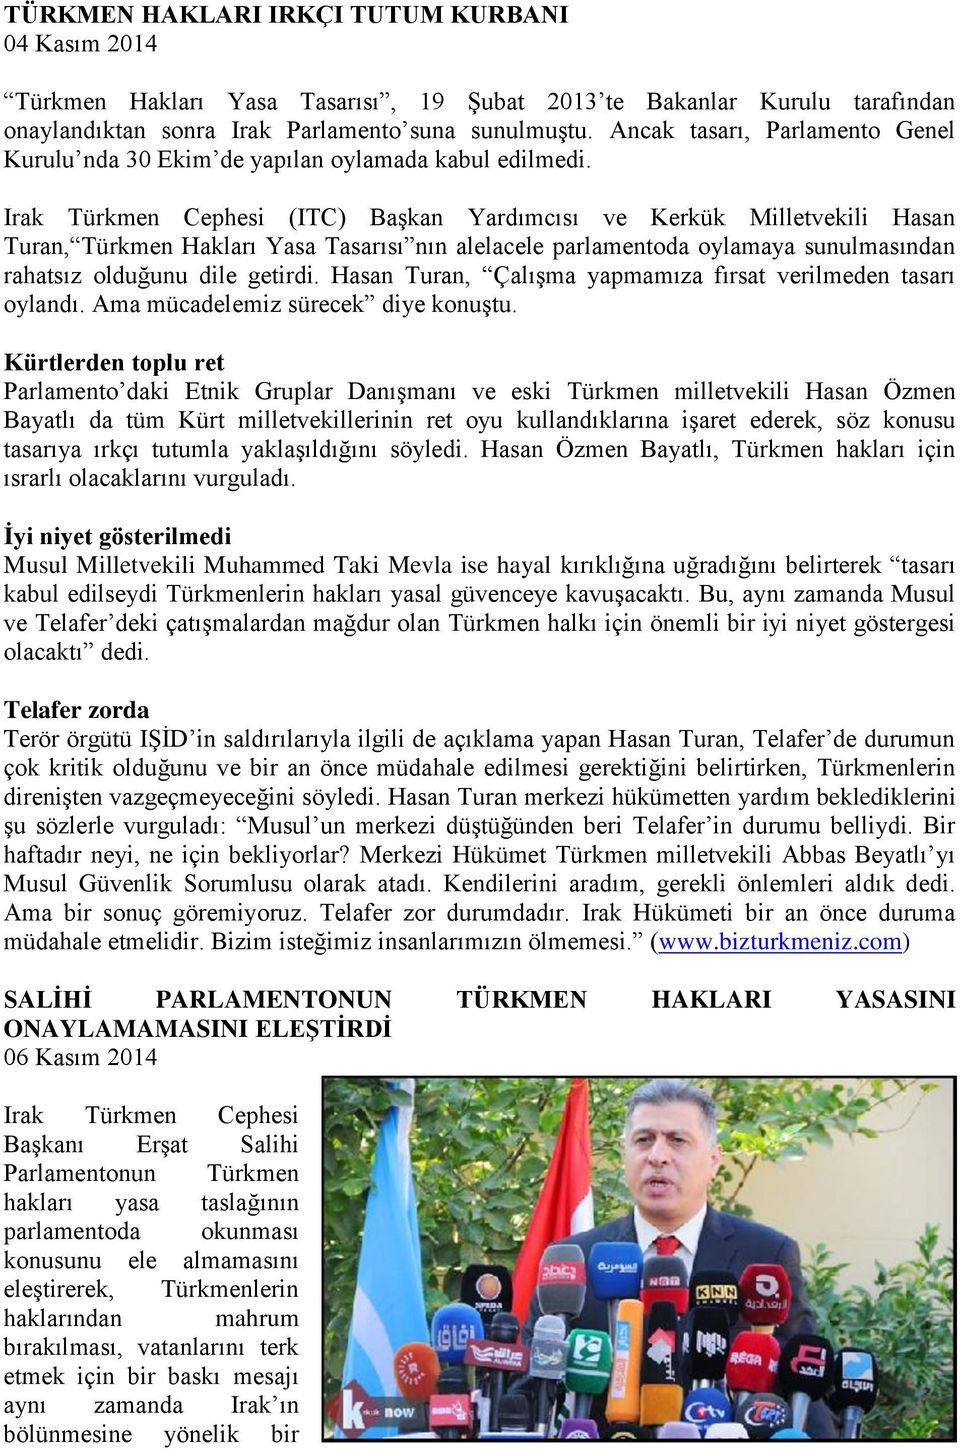 Irak Türkmen Cephesi (ITC) Başkan Yardımcısı ve Kerkük Milletvekili Hasan Turan, Türkmen Hakları Yasa Tasarısı nın alelacele parlamentoda oylamaya sunulmasından rahatsız olduğunu dile getirdi.